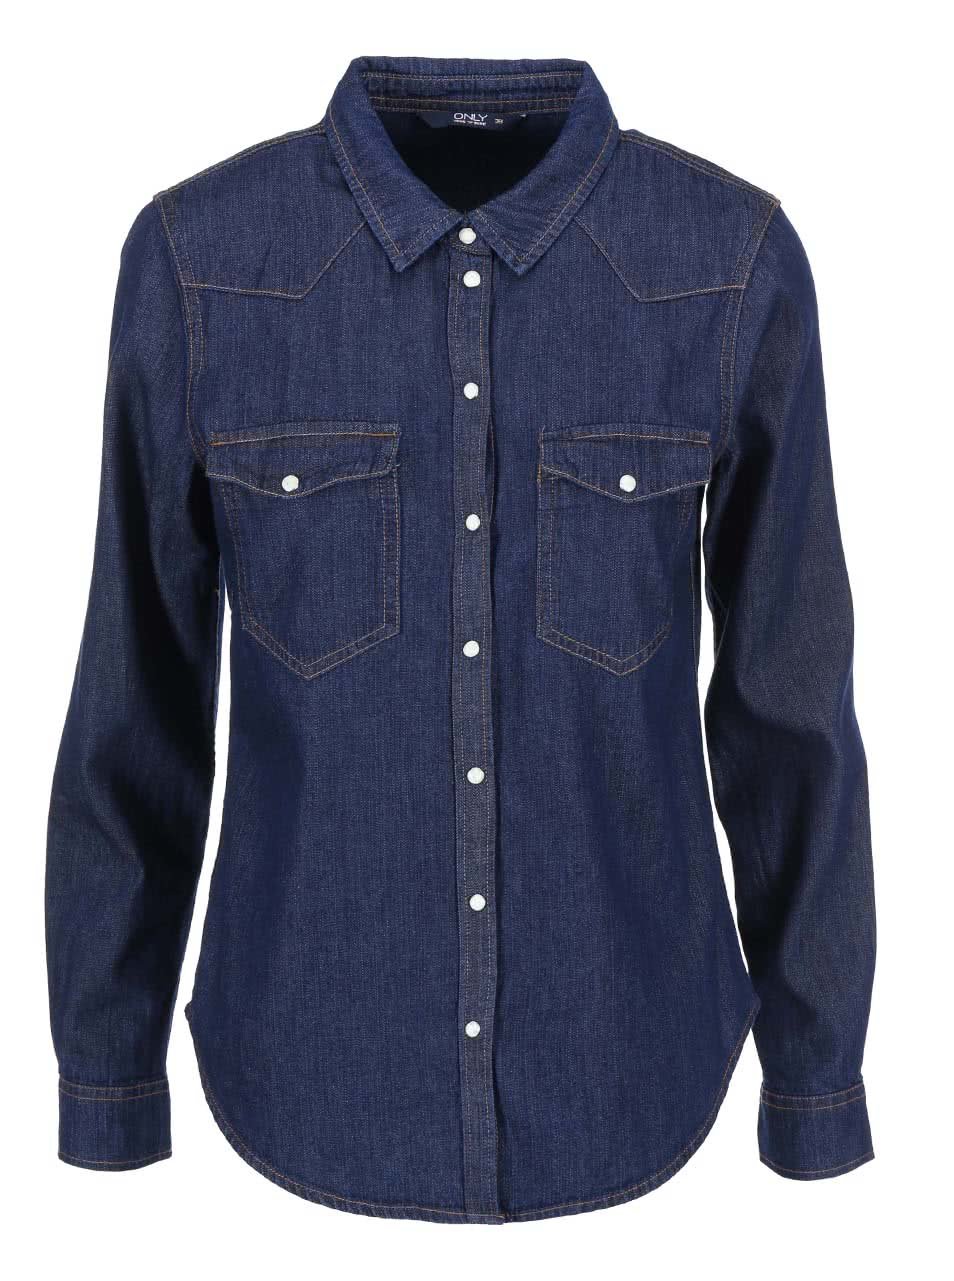 Tmavě modrá džínová košile s výrazným prošíváním ONLY Kavor